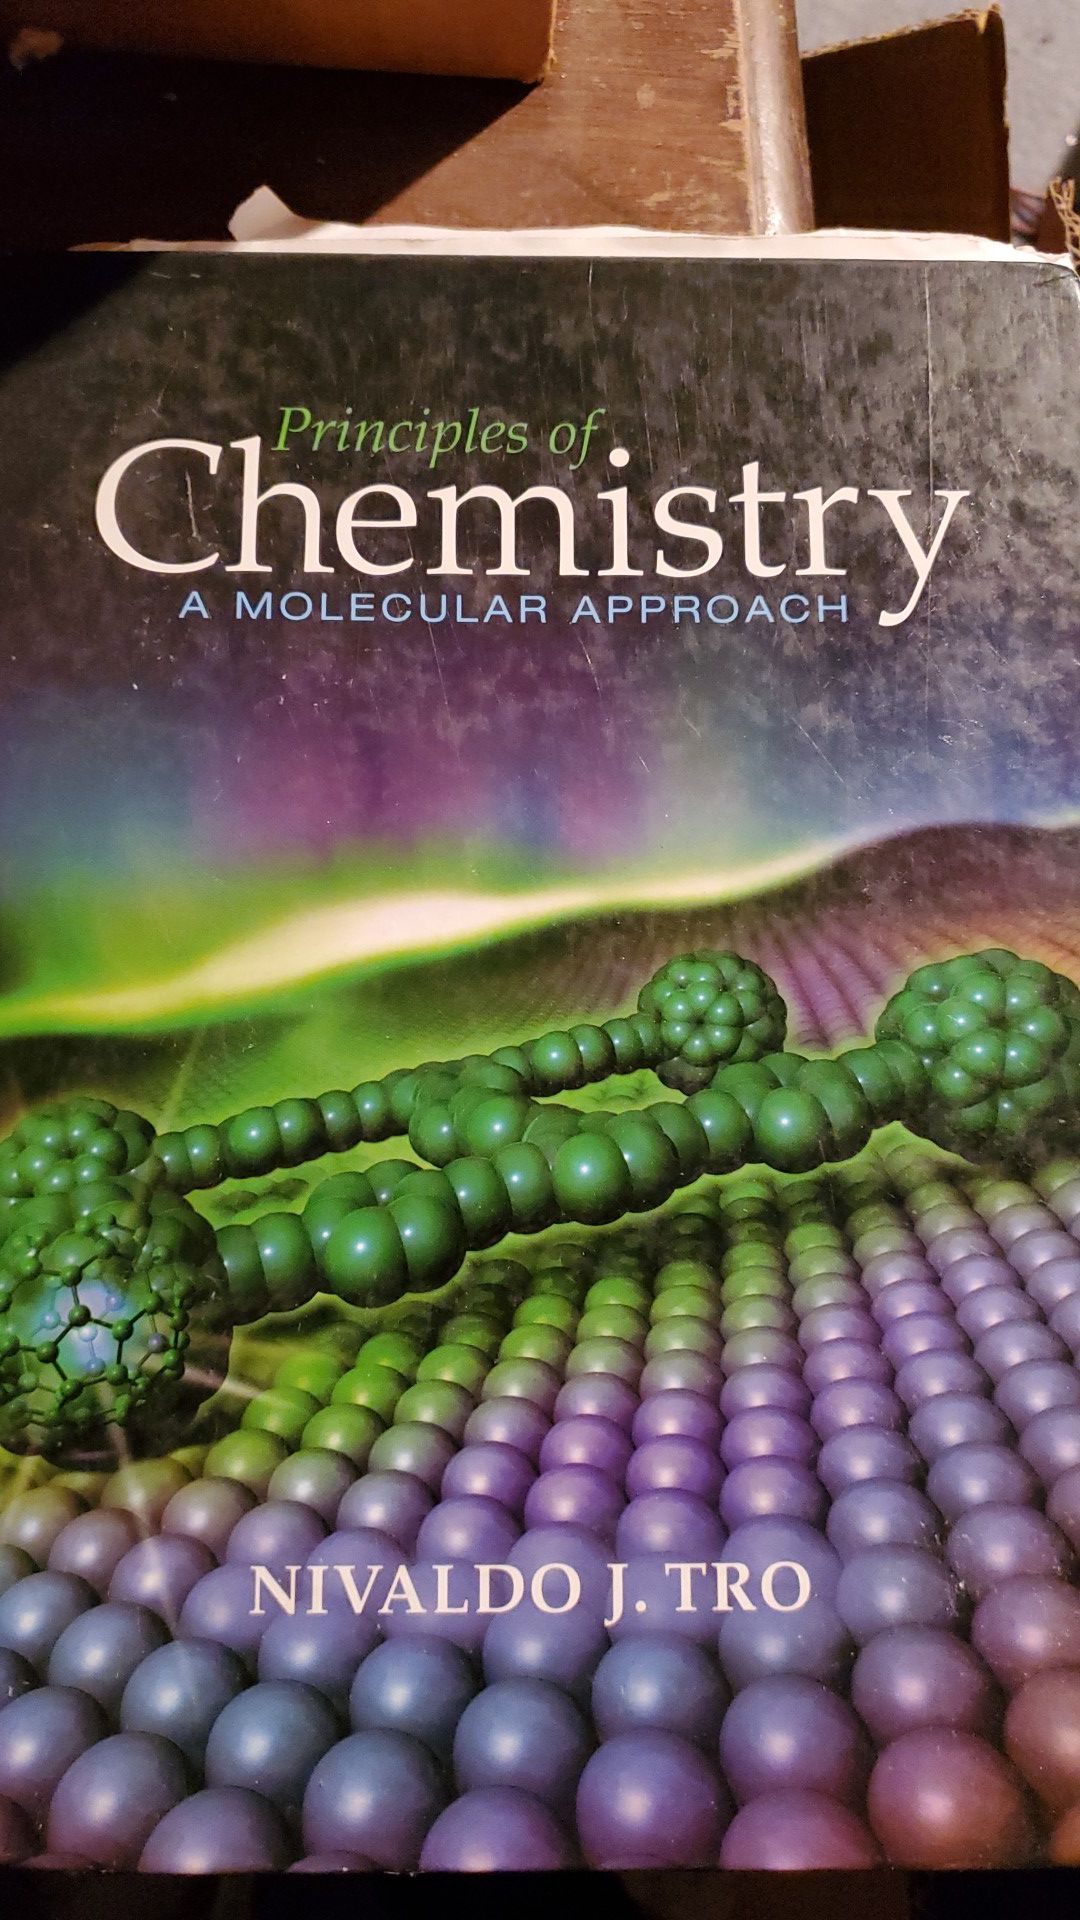 Principles of Chemistry - A Molecular Approach by Nivaldo J. Tro